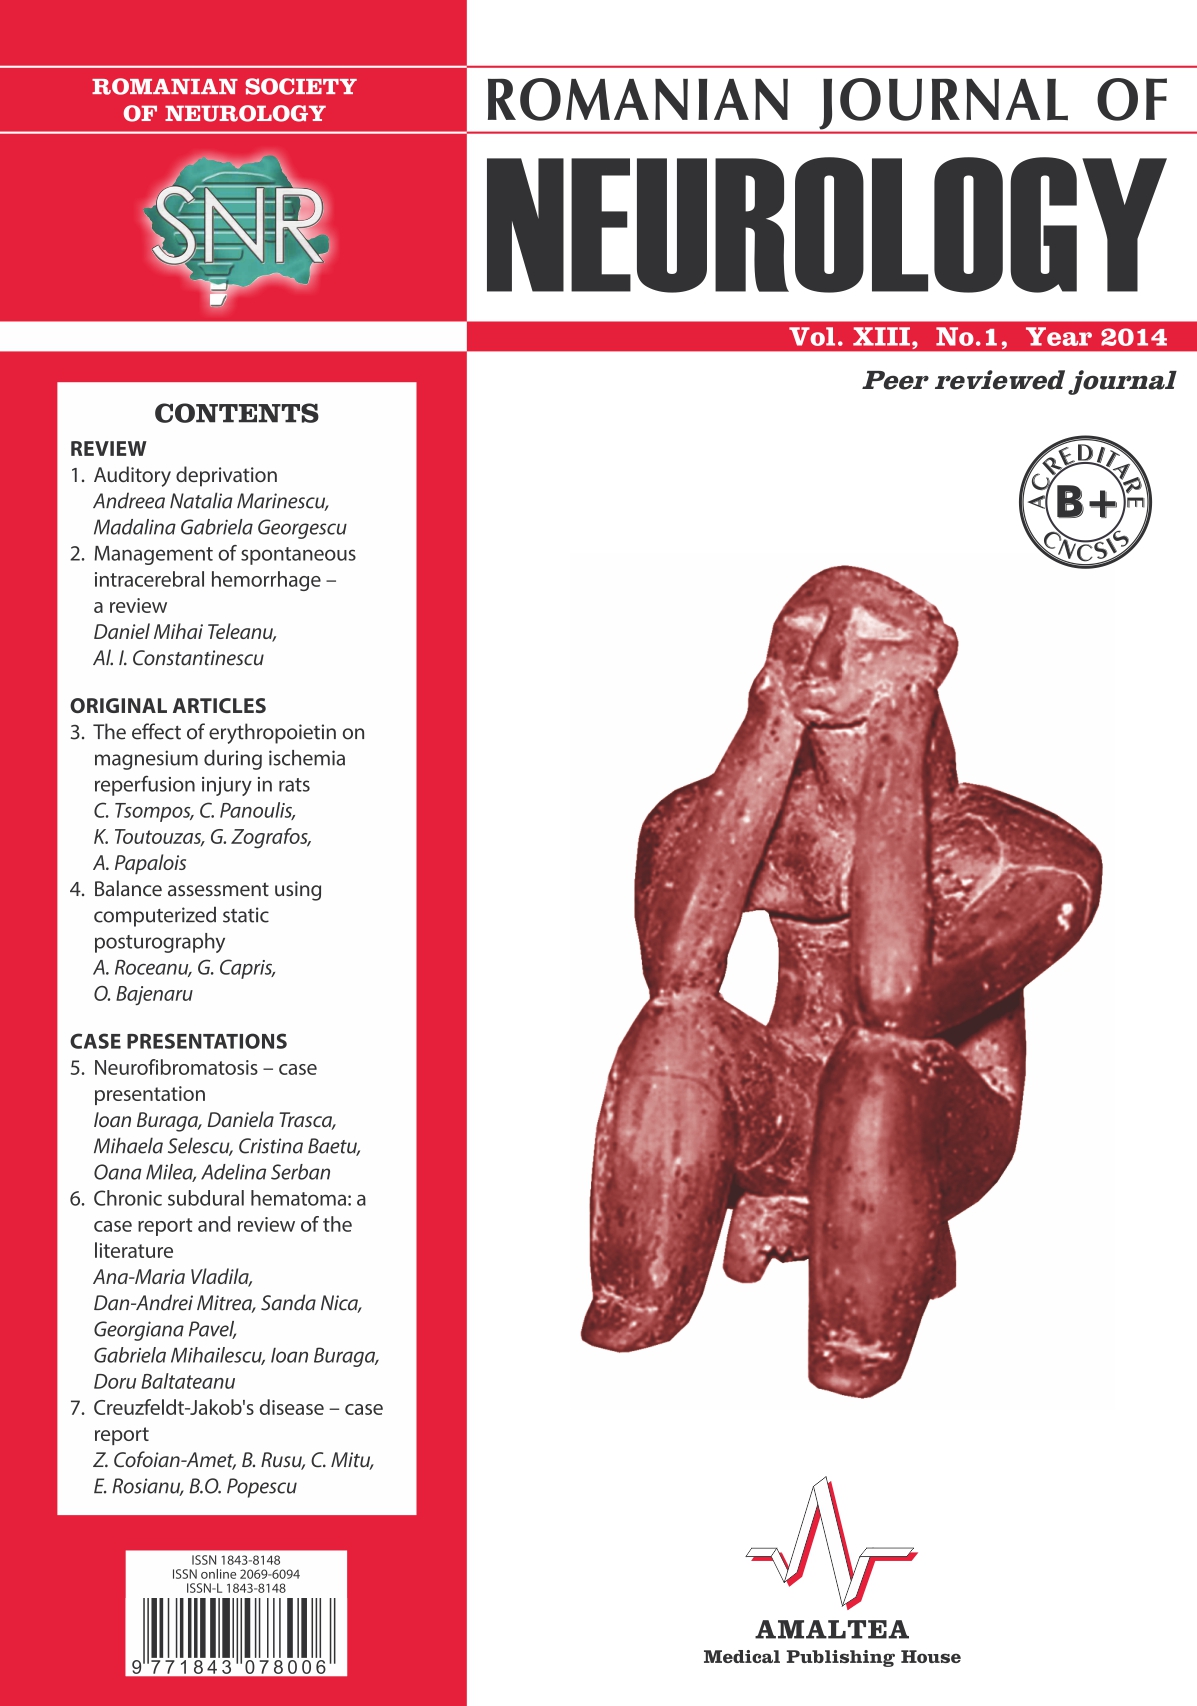 Romanian Journal of Neurology, Volume XIII, No. 1, 2014